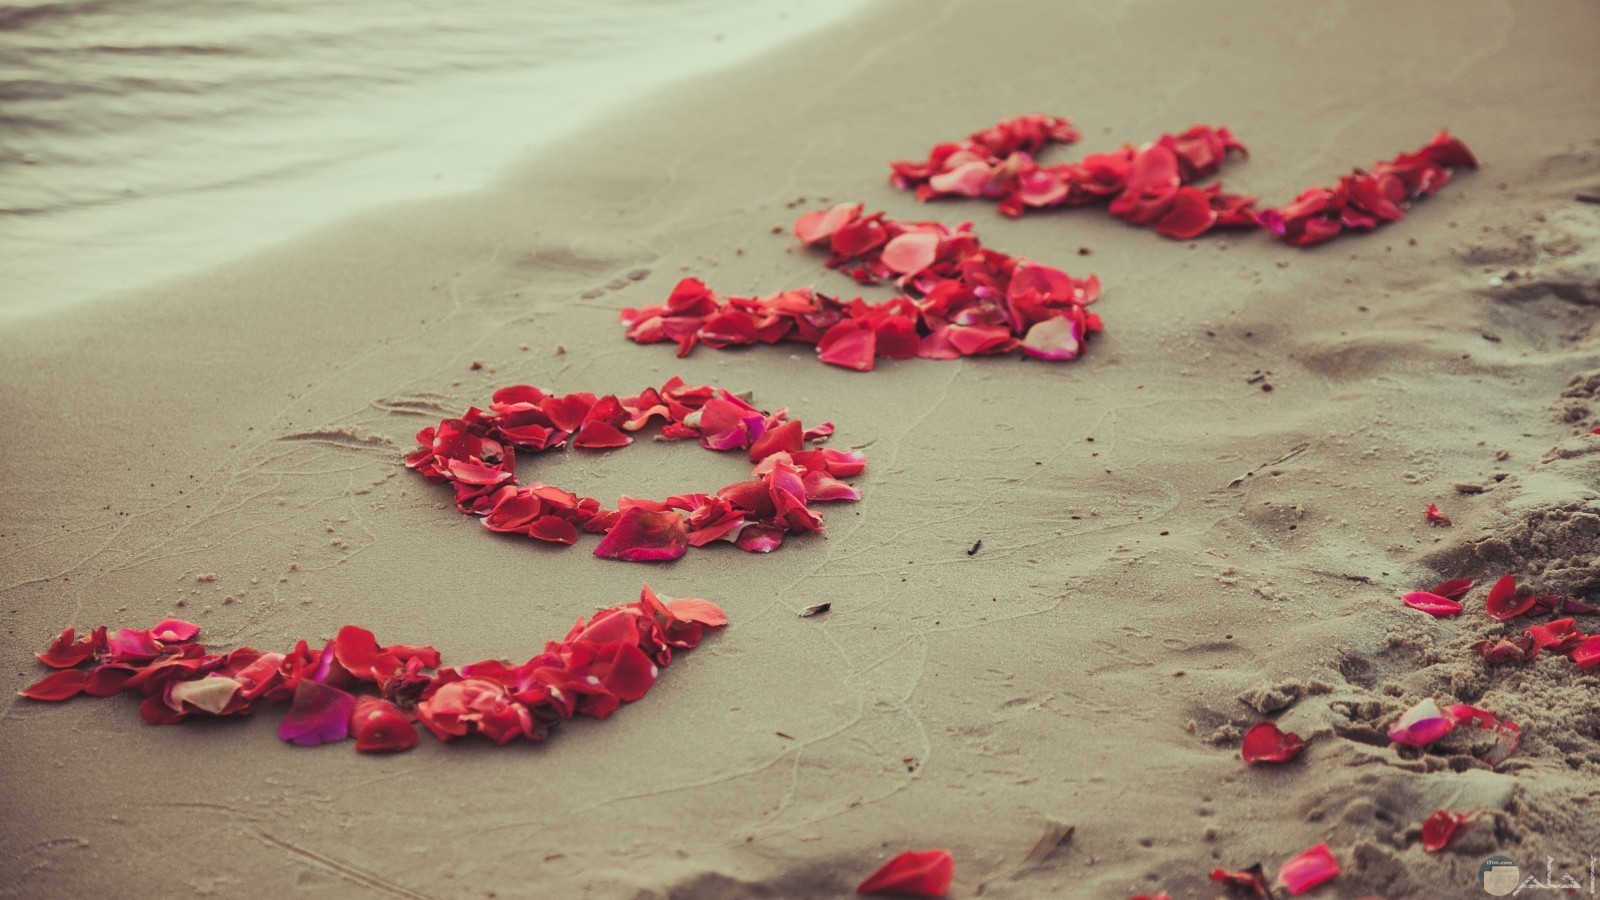 كتابة Love على رمال الشاطئ في البحر.